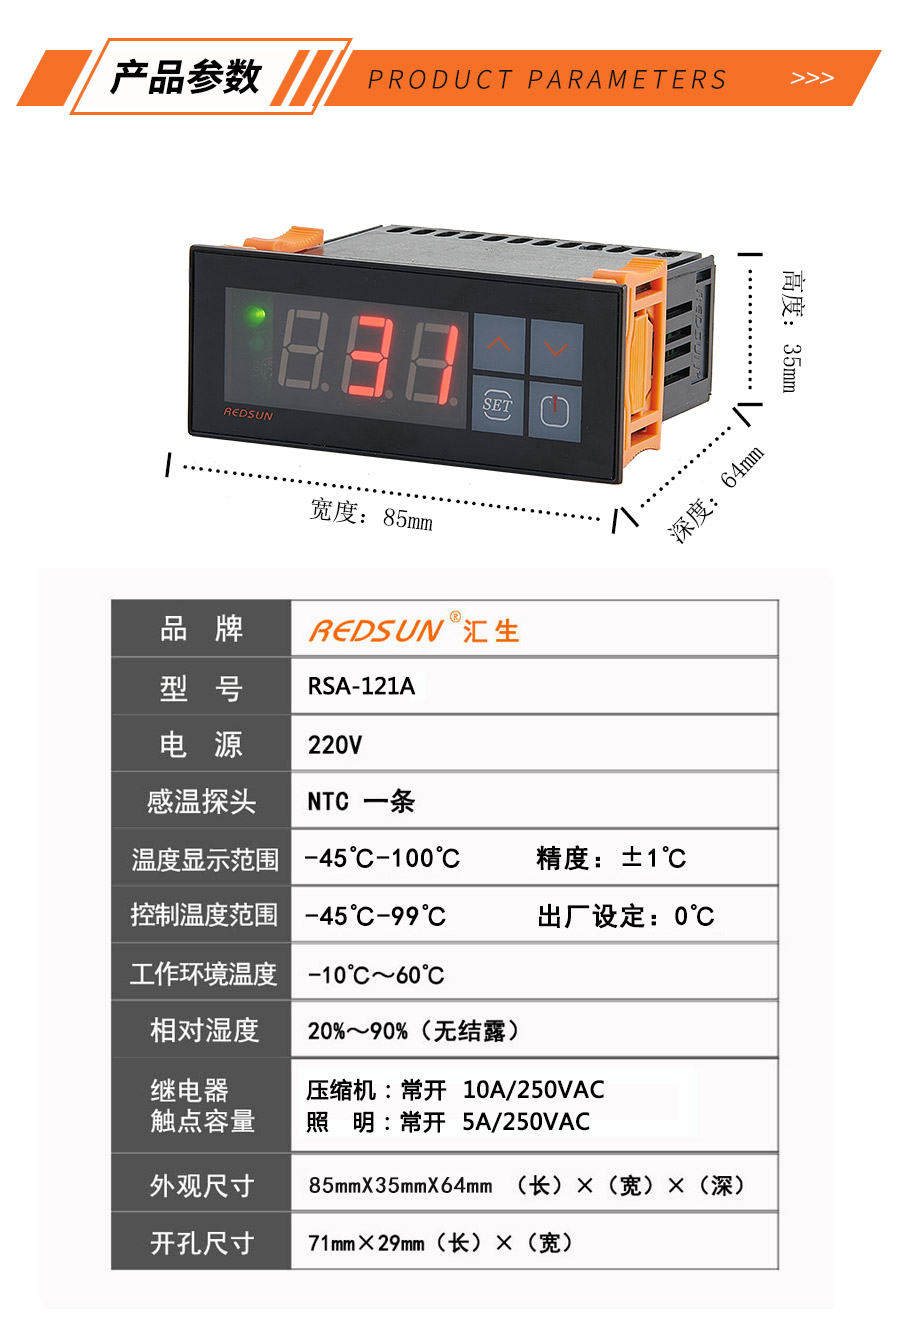 全自动爬宠养殖温度控制器 RSA-121A温度控制器-温控器-制冷制热恒温控制器-电子温控器 温控仪表-汇生 